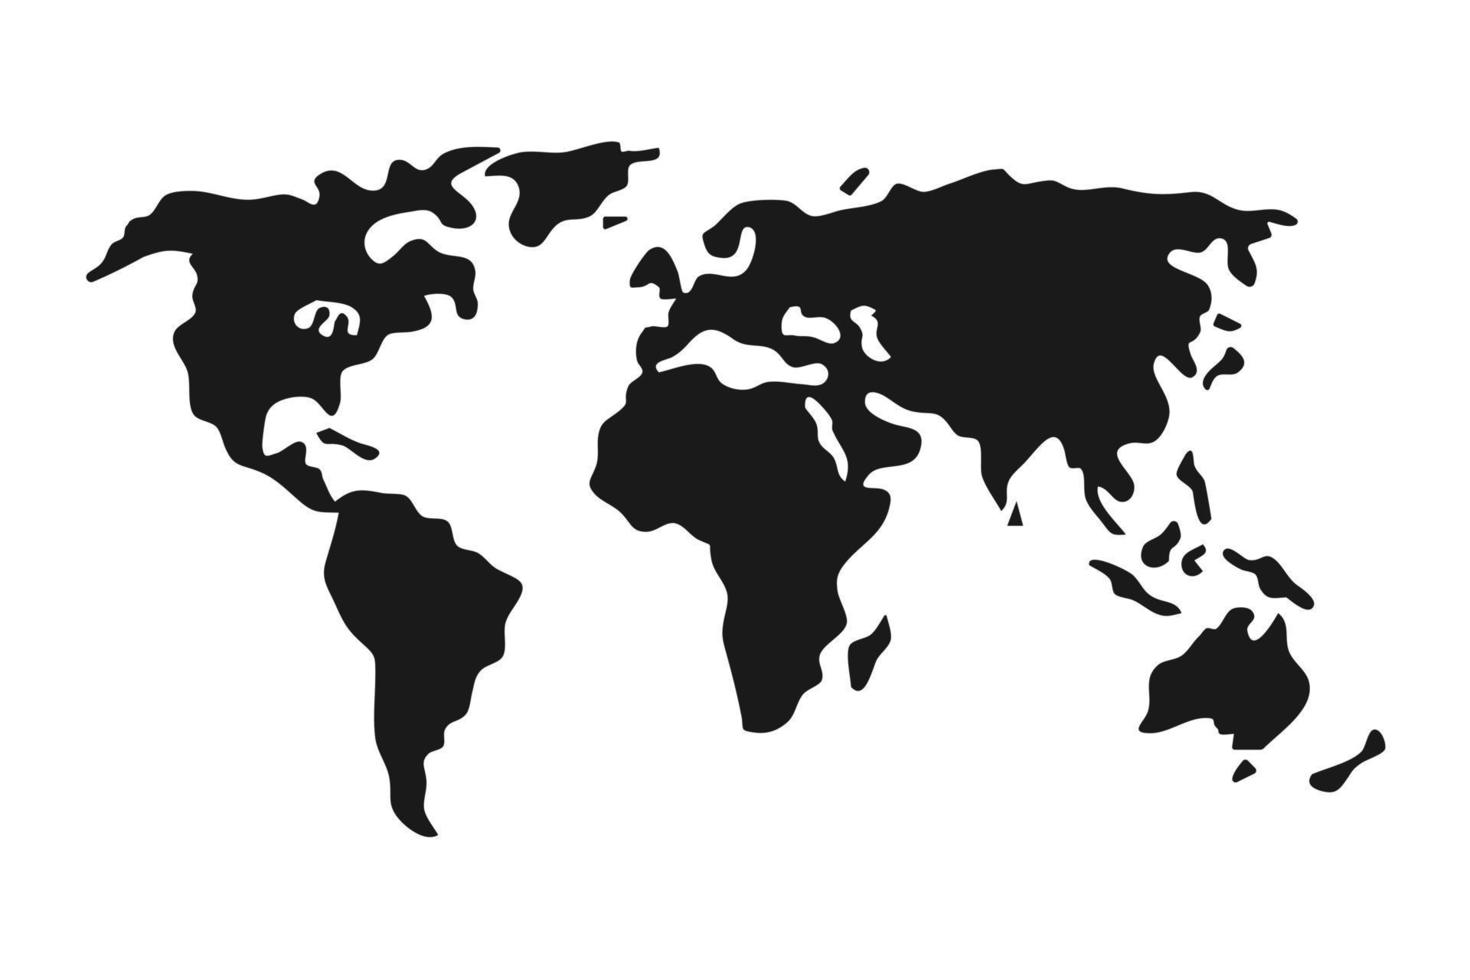 enkel svart världskarta i platt stil isolerad på vit bakgrund. vektor illustration.